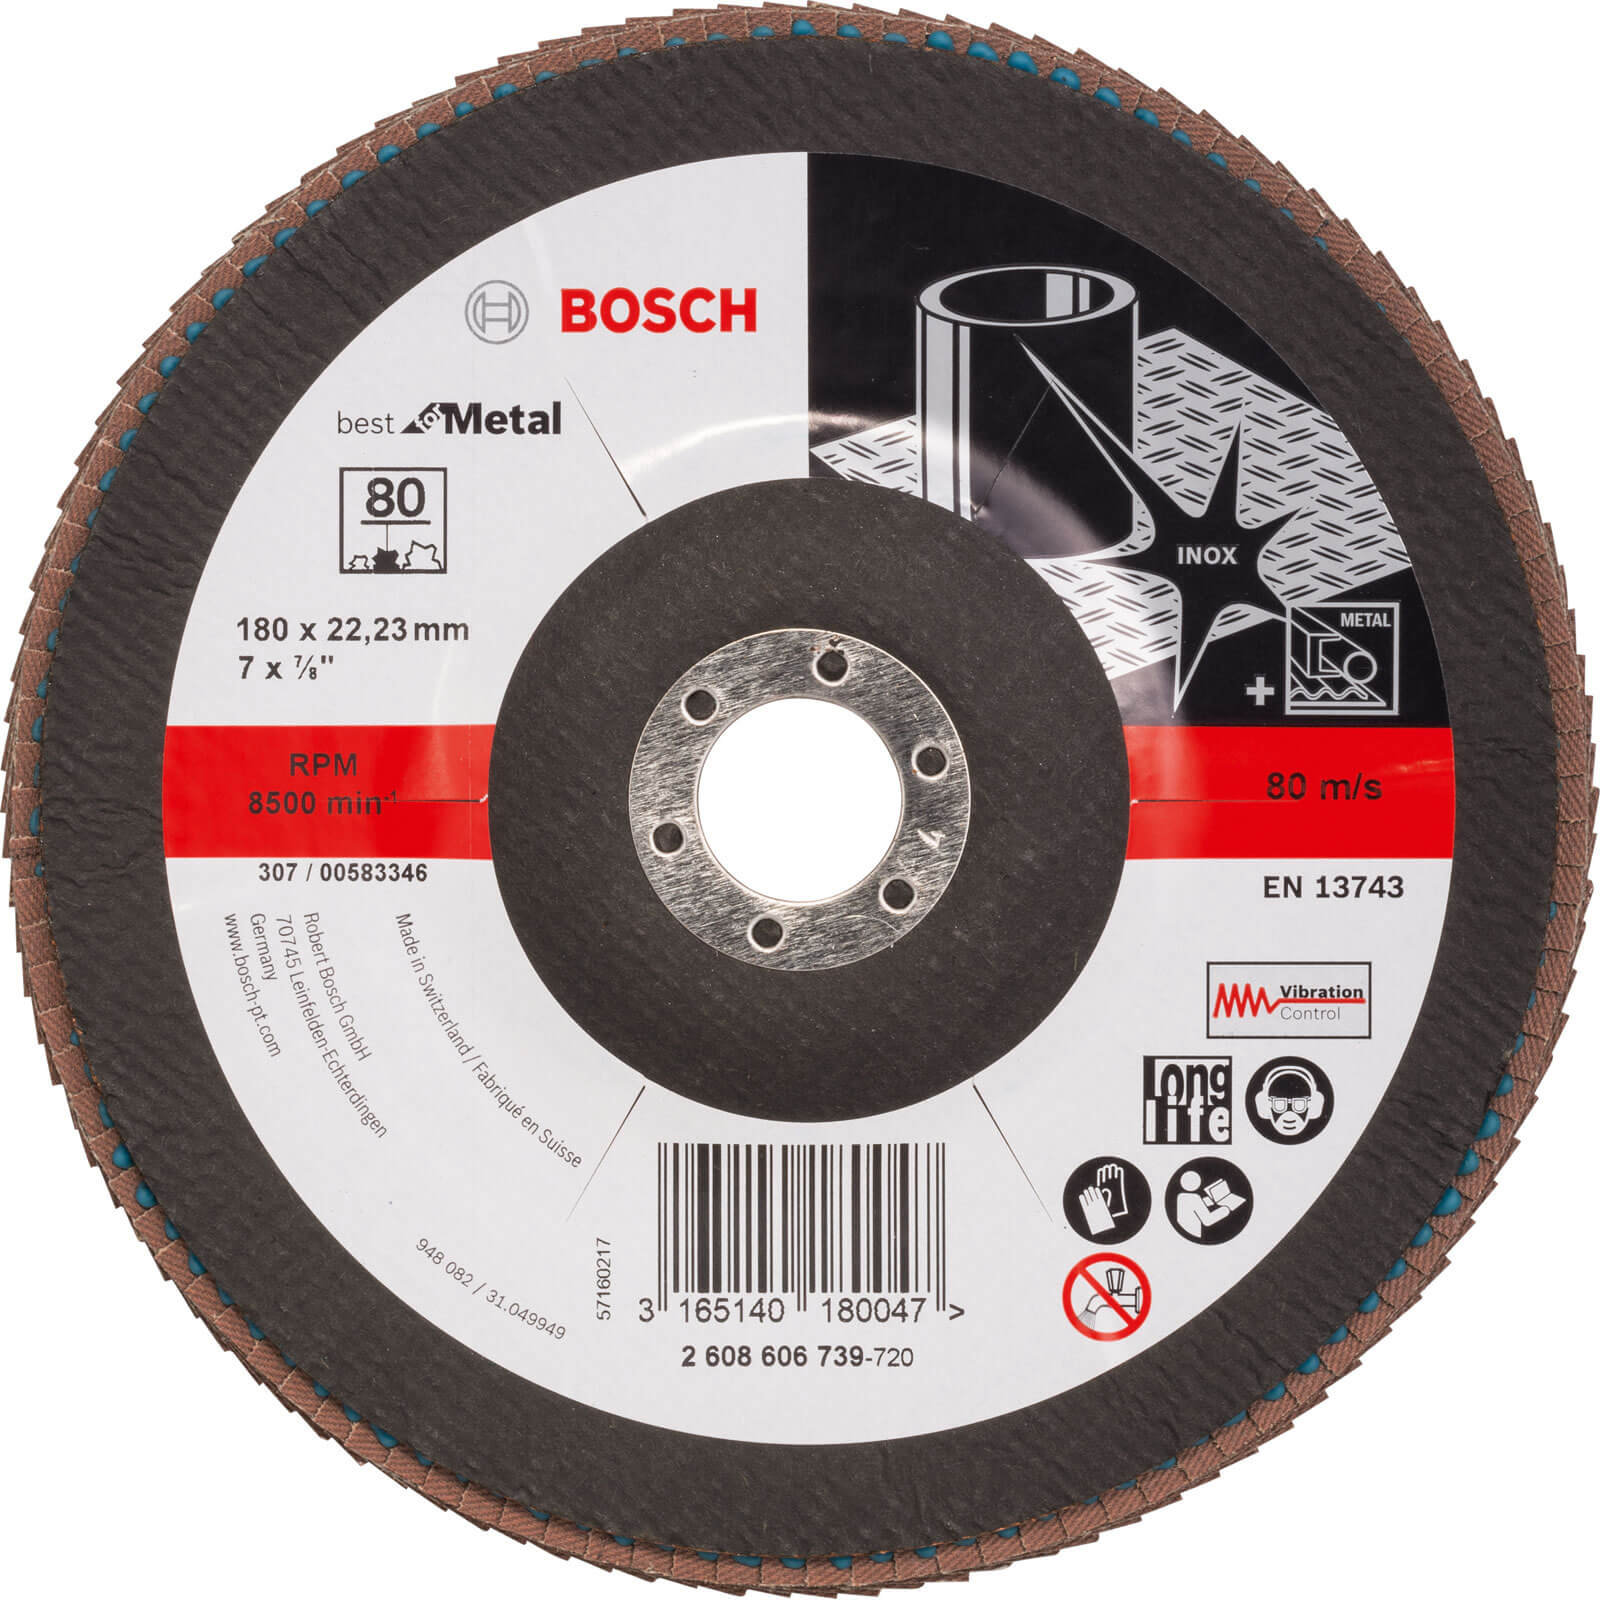 Photos - Cutting Disc Bosch Zirconium Abrasive Flap Disc 180mm 80g 